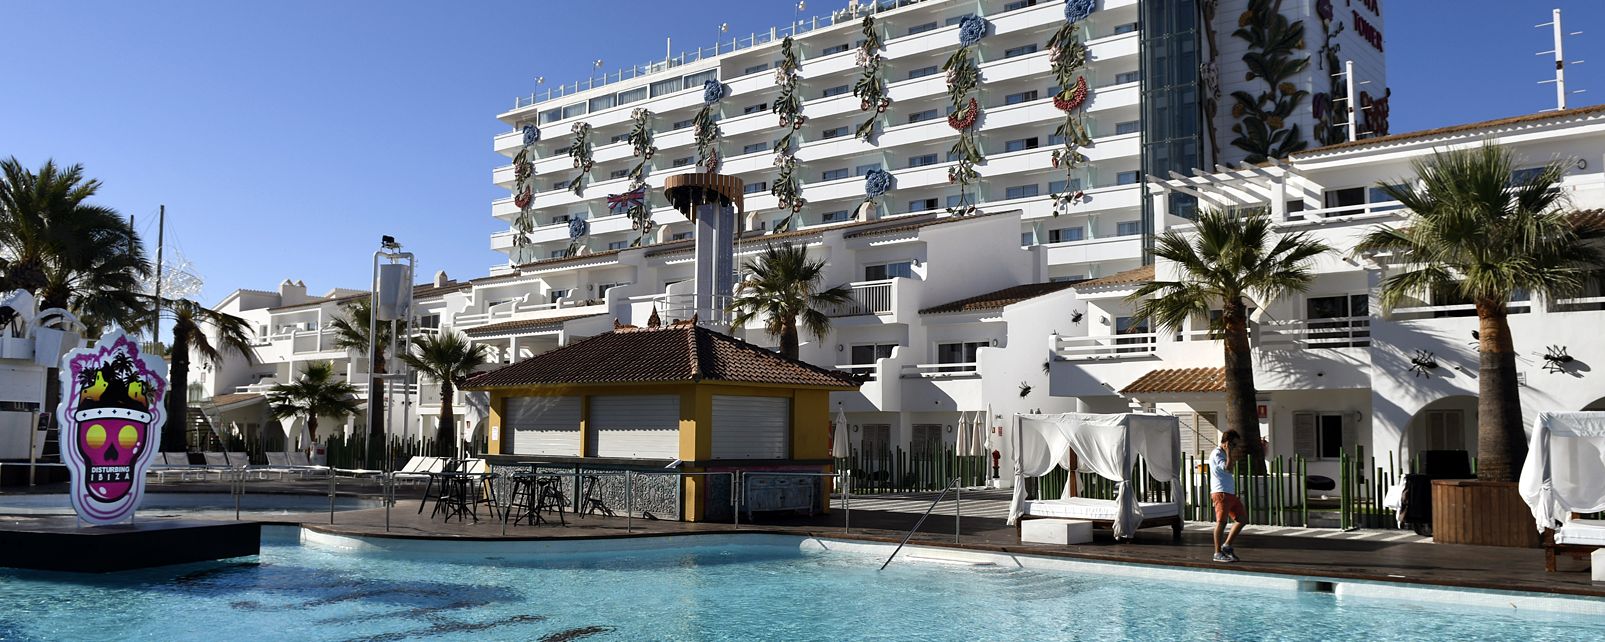 Hôtel Ushuaia Ibiza Beach